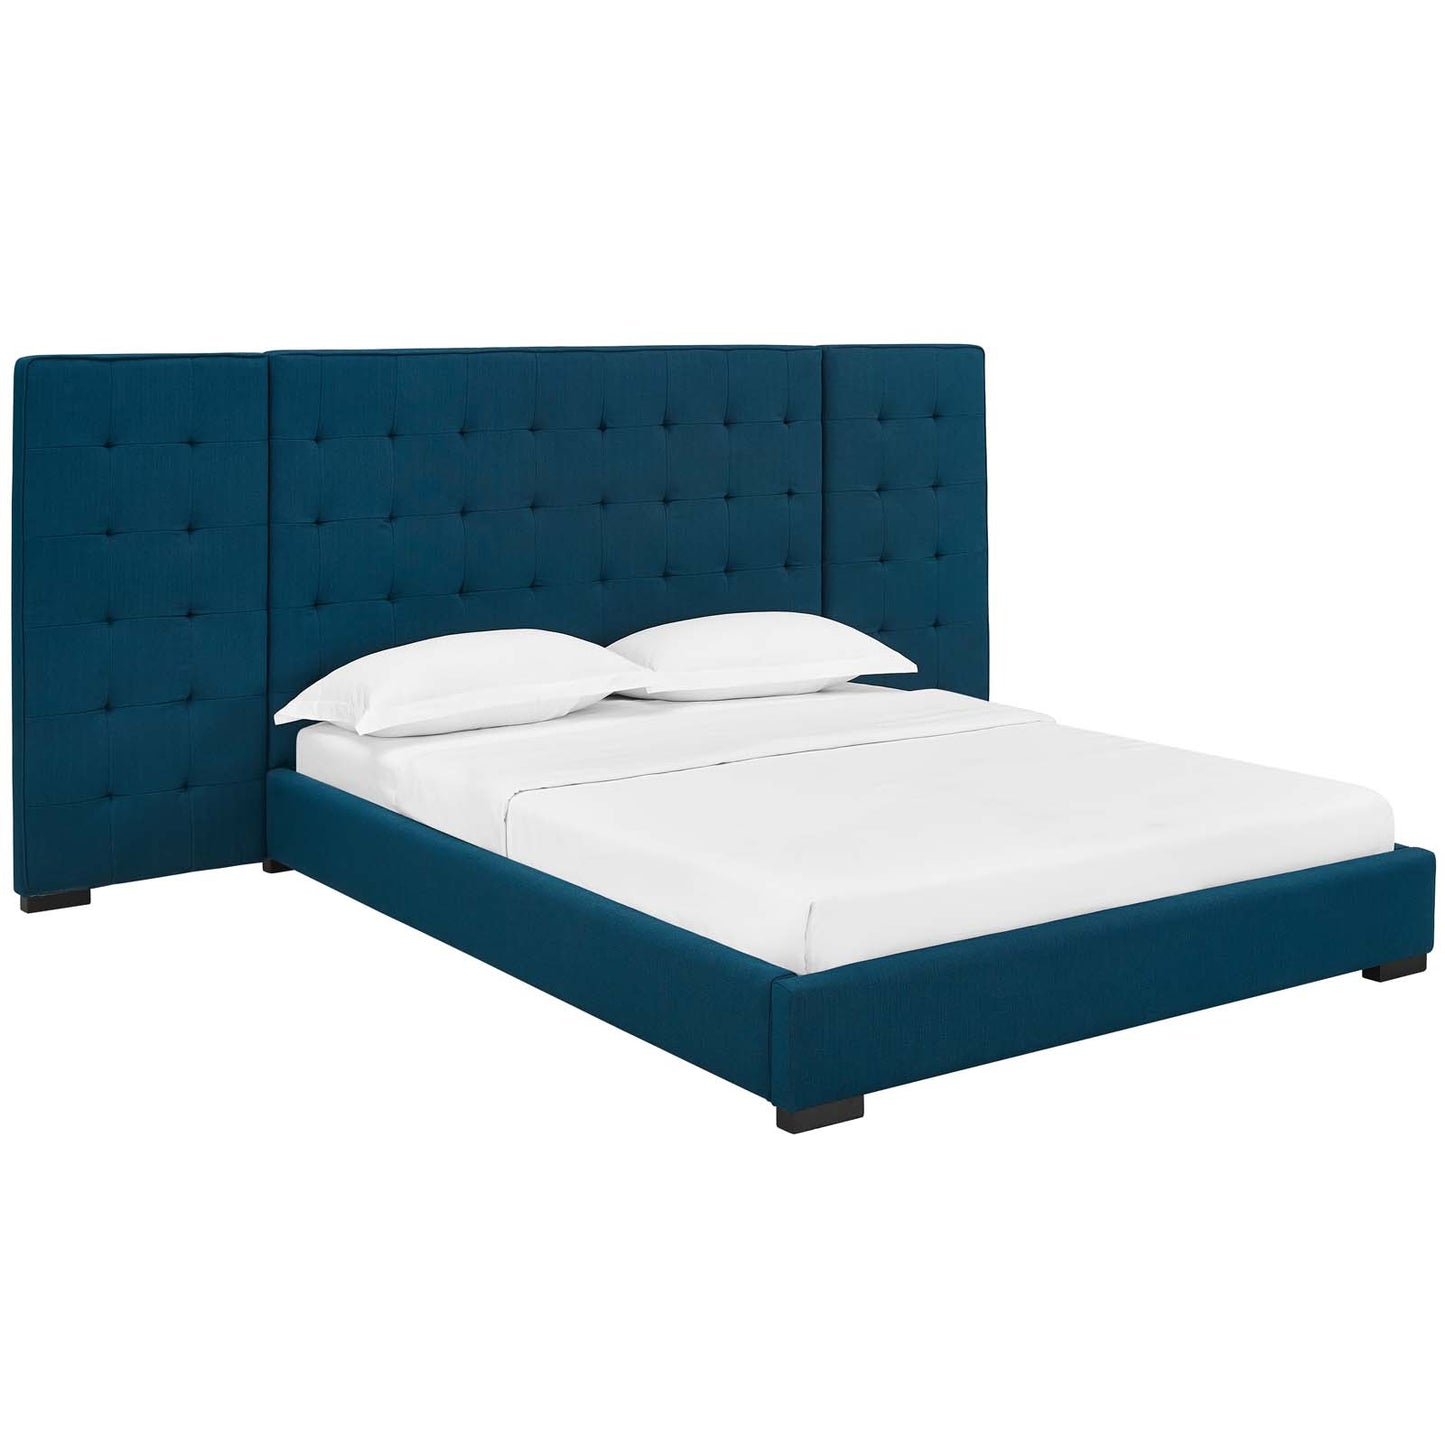 Sierra Queen Upholstered Fabric Platform Bed Azure MOD-5818-AZU